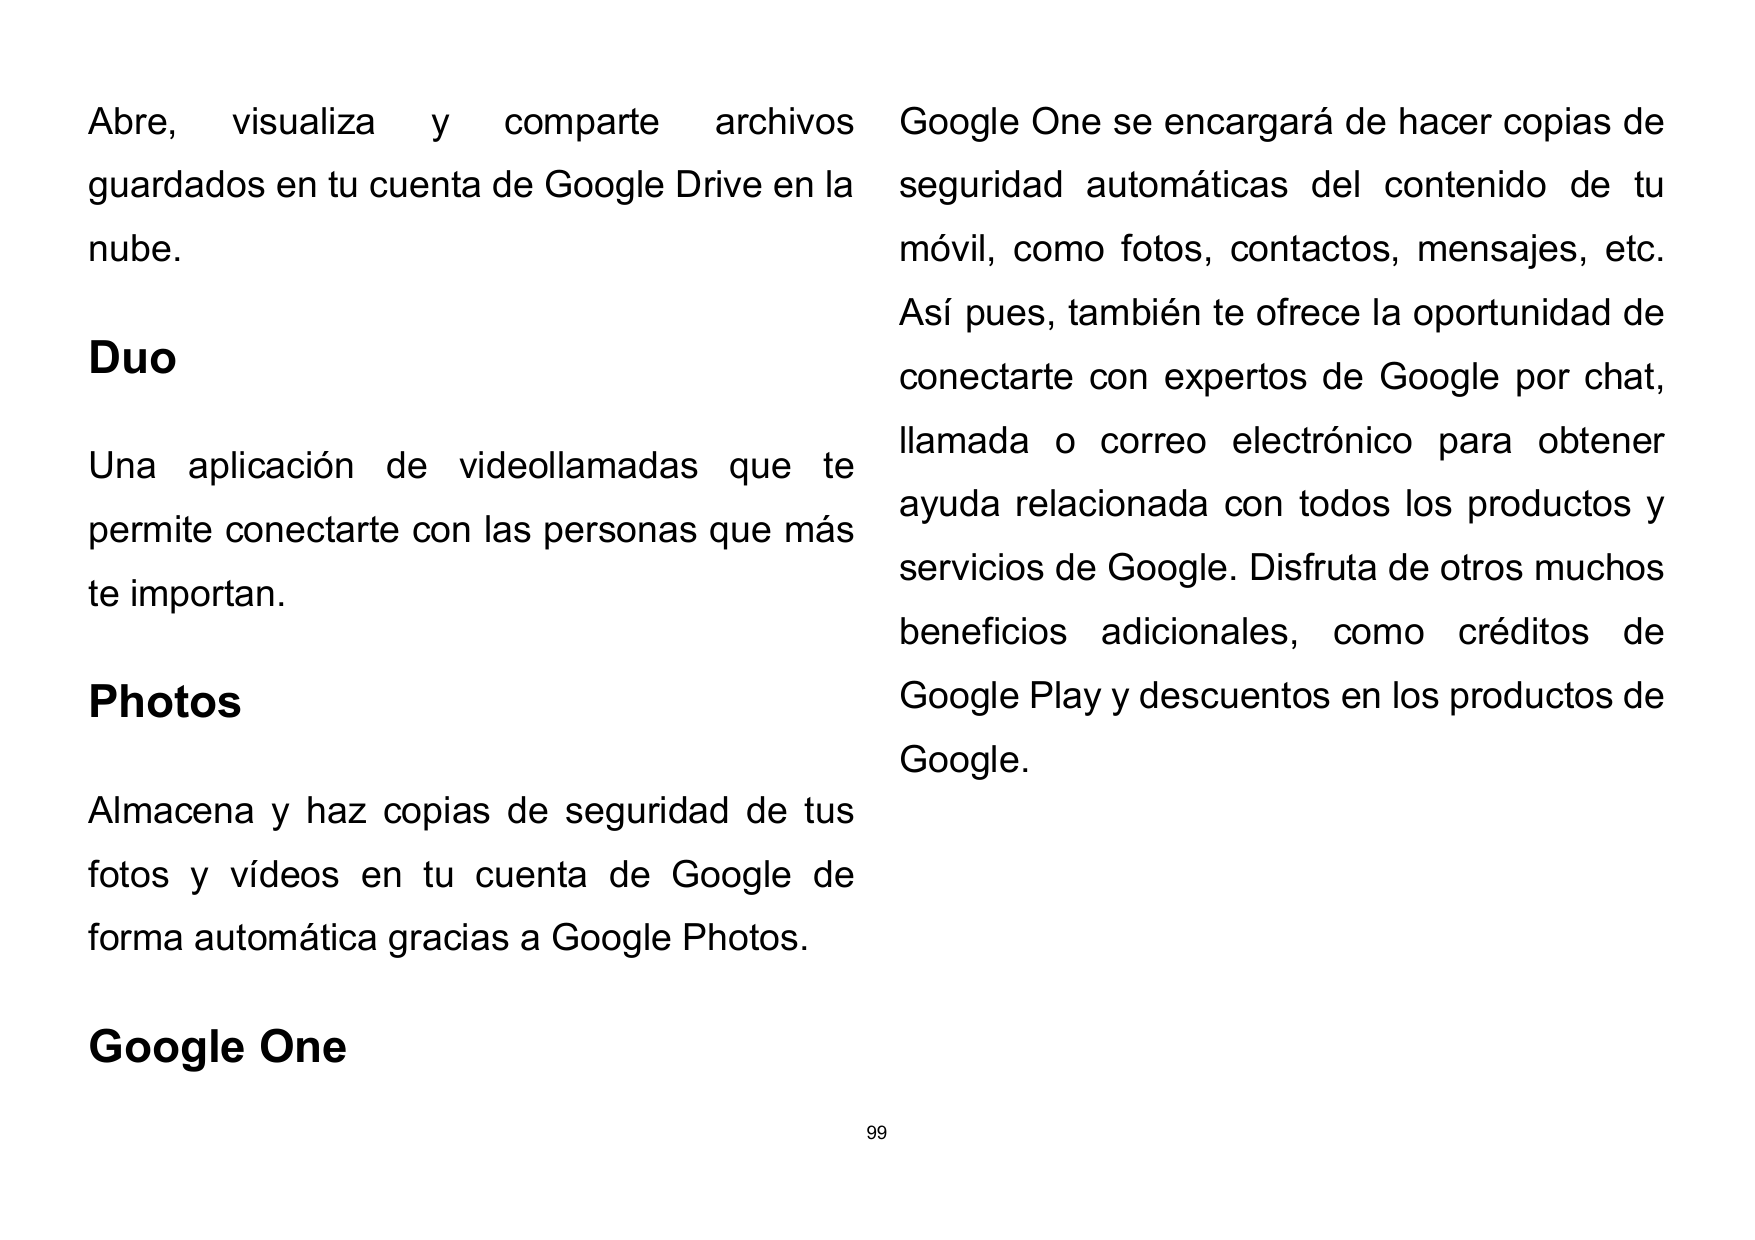 Abre,visualizaycompartearchivosGoogle One se encargará de hacer copias deguardados en tu cuenta de Google Drive en laseguridad a